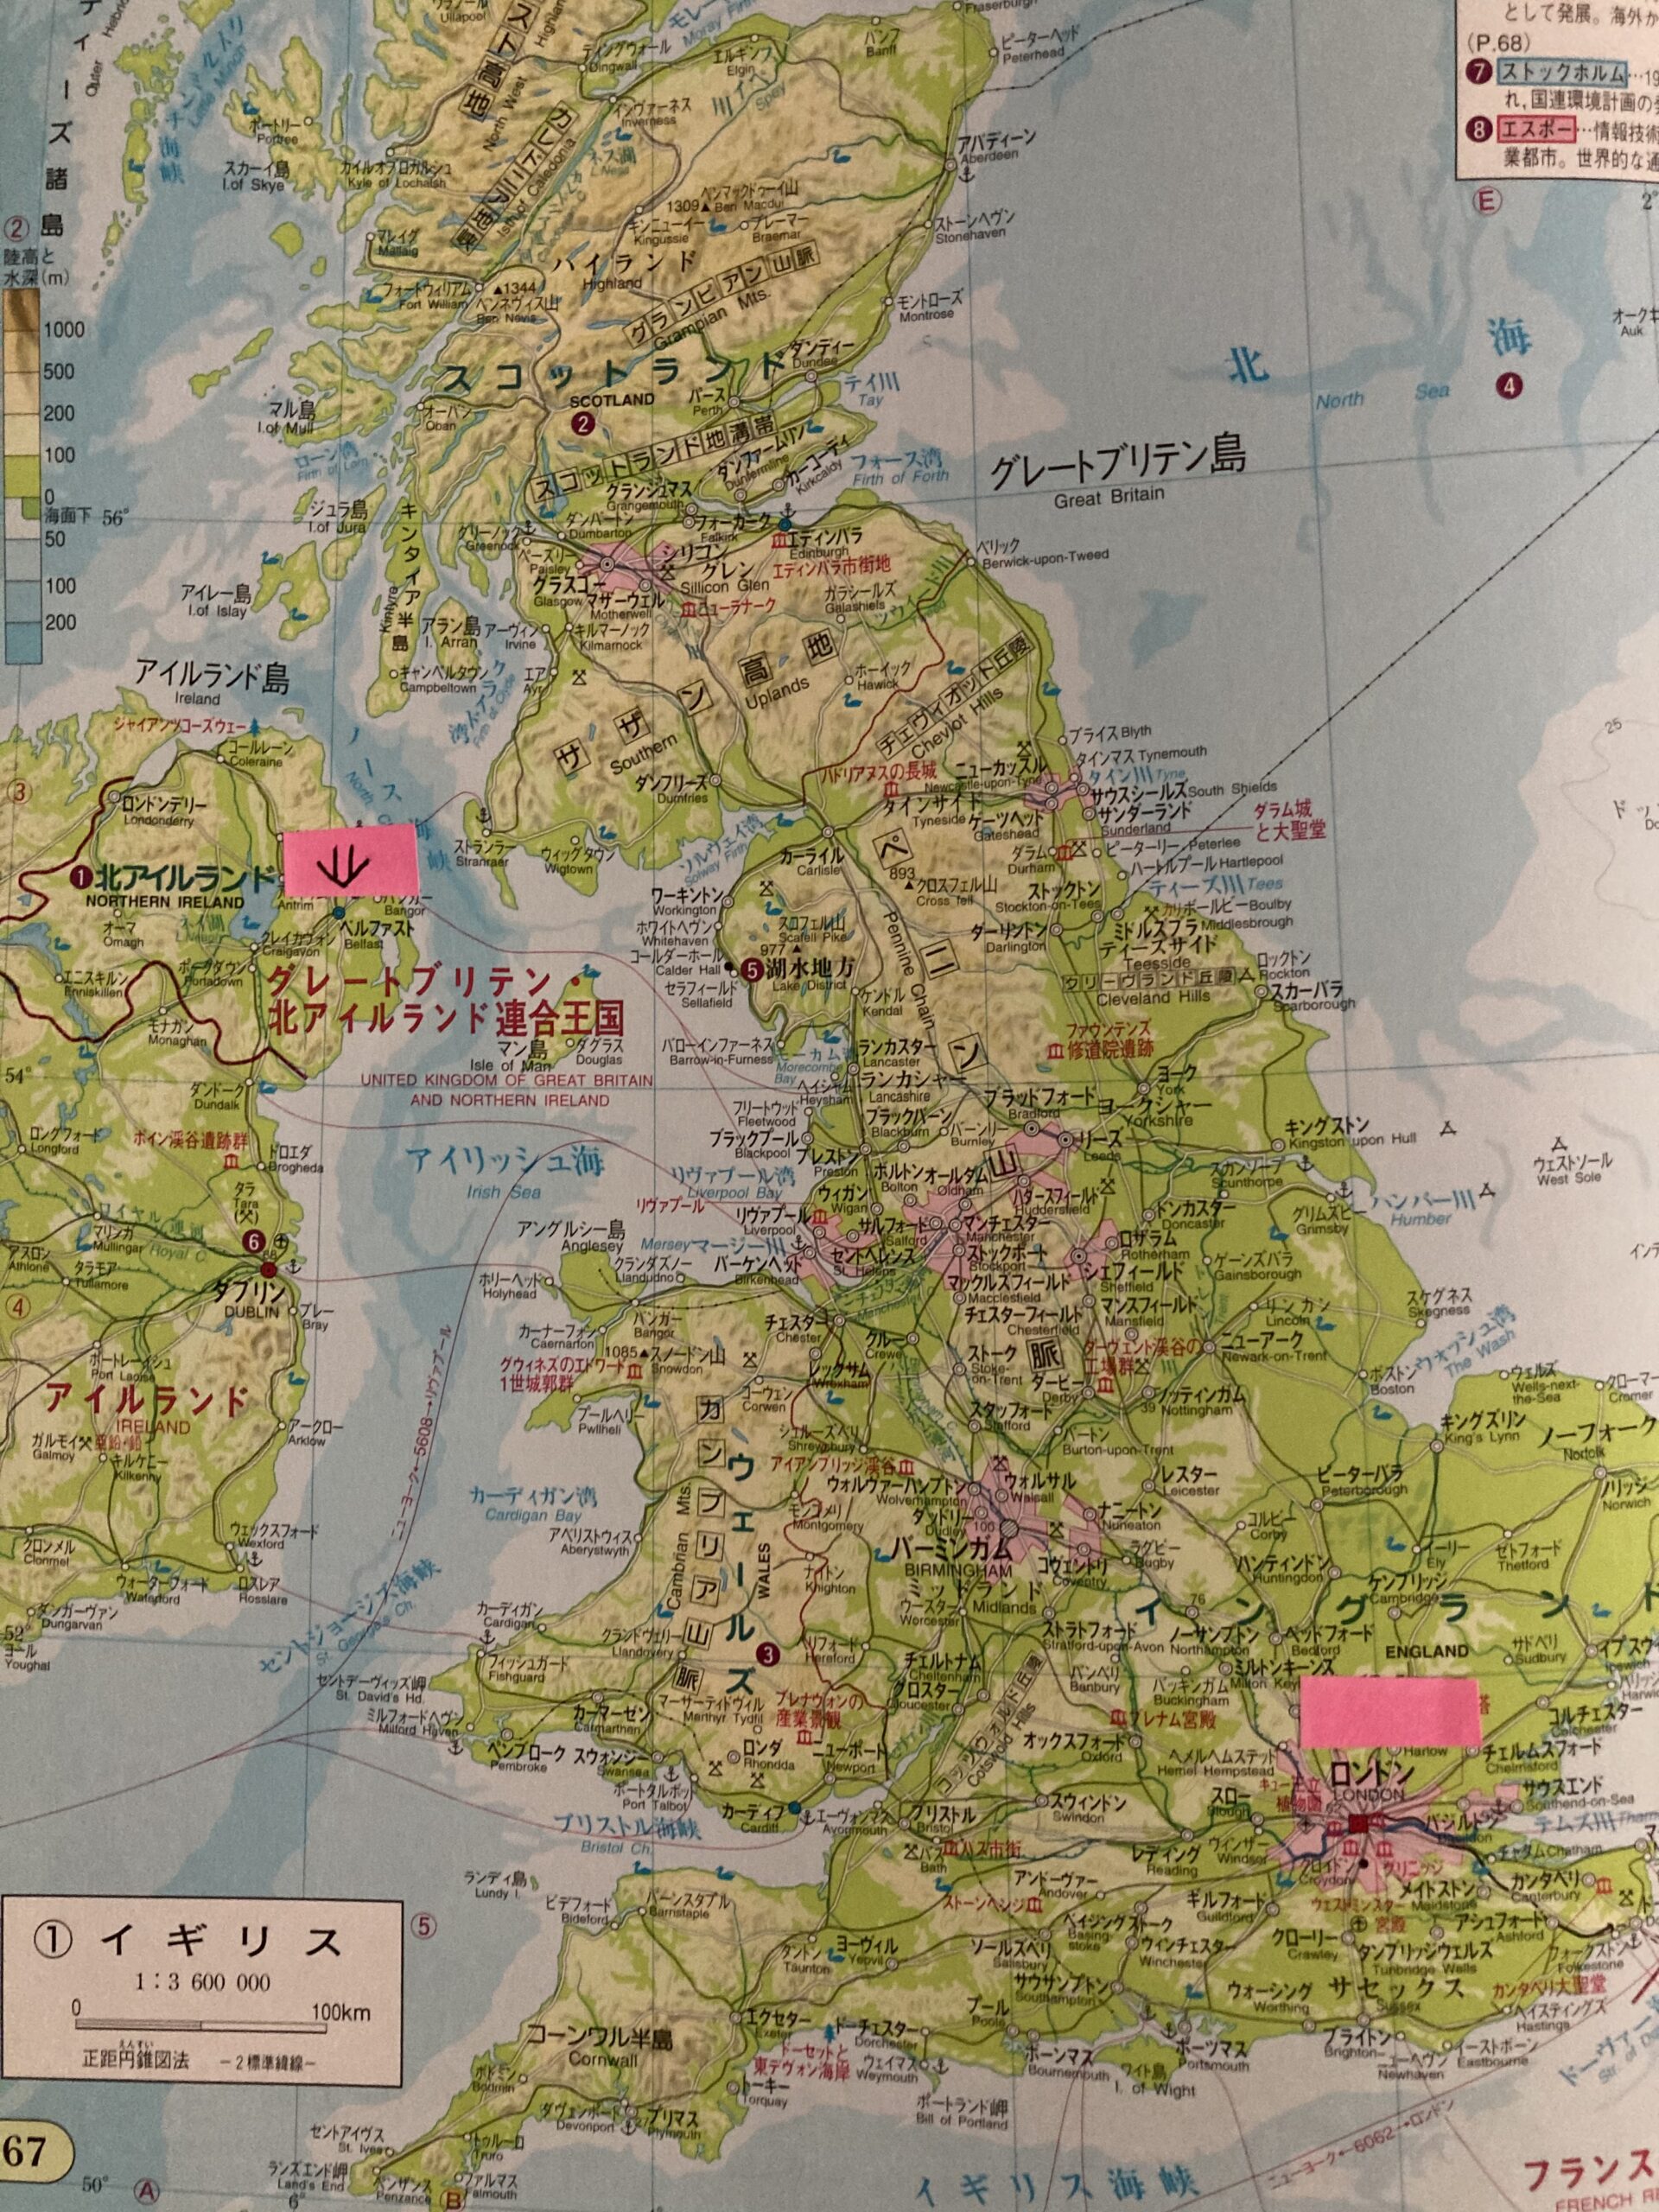 イギリスの地図。ベルファストとロンドンに印が付けてある。